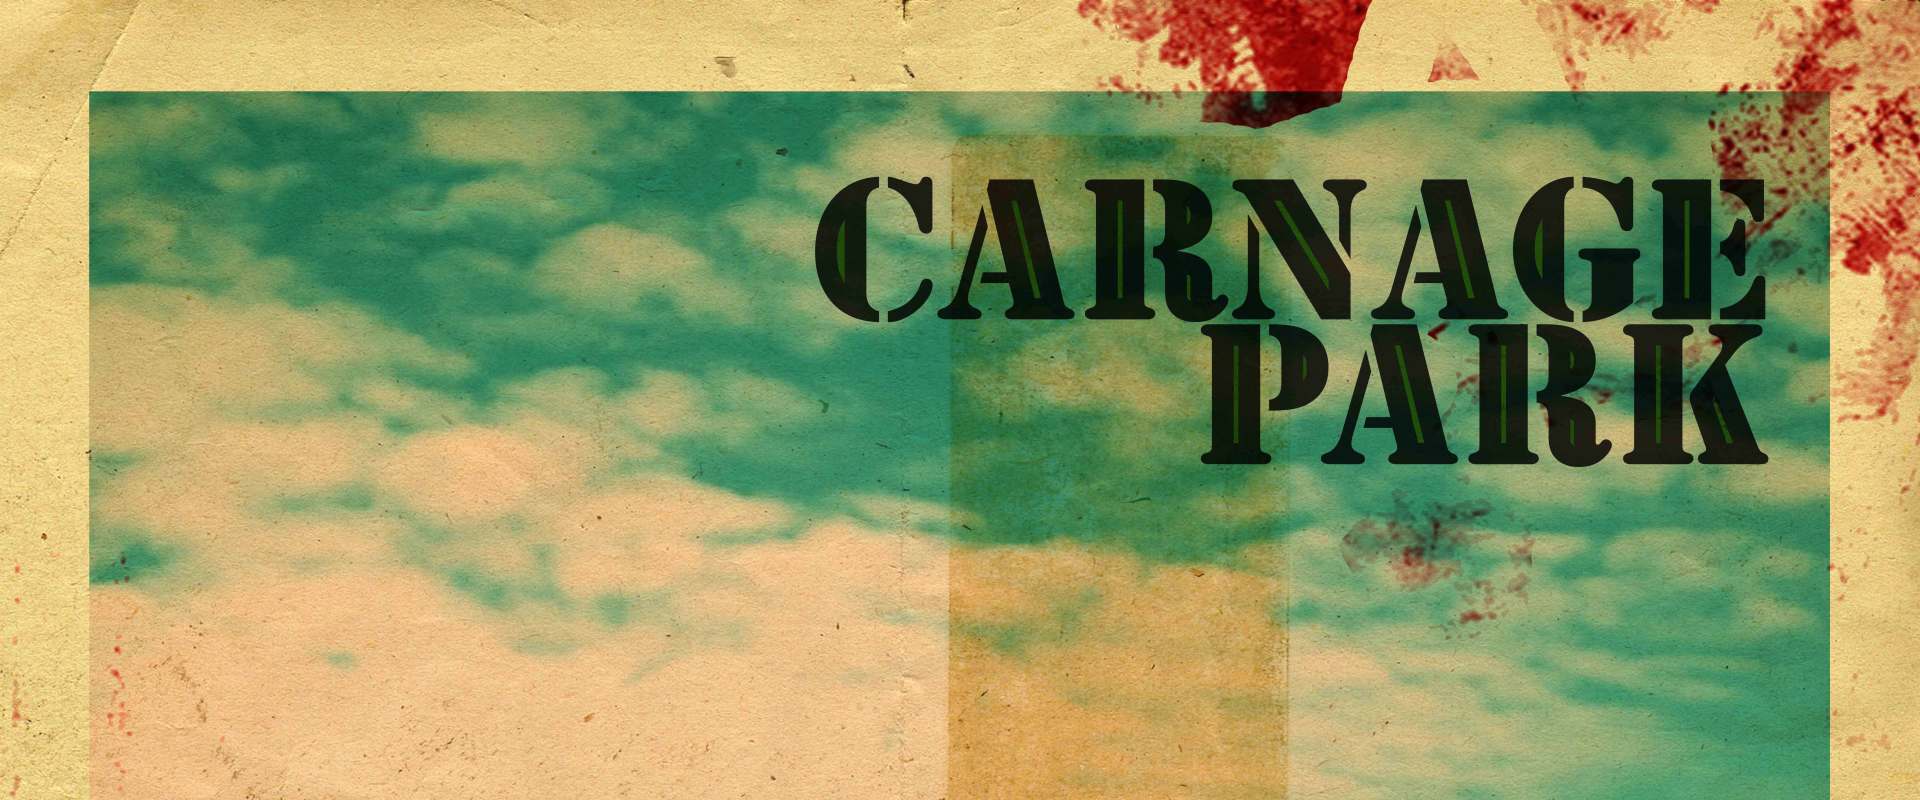 Carnage Park background 2